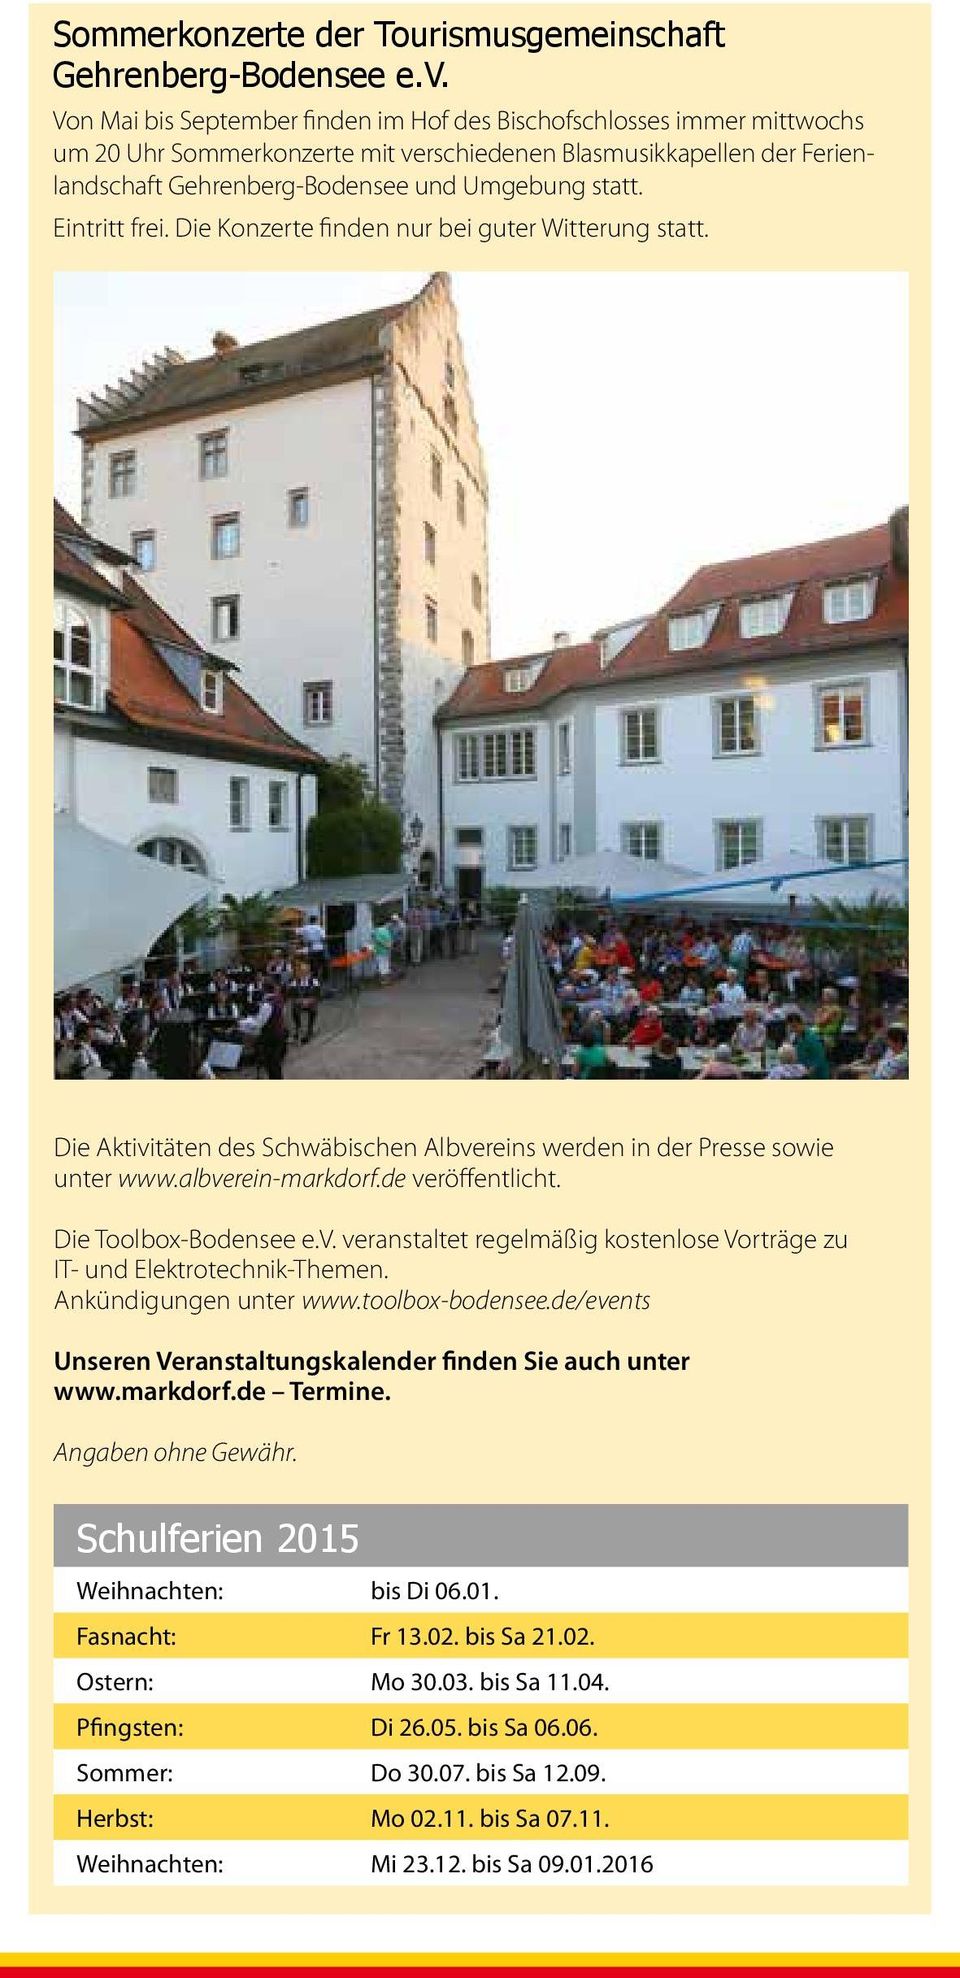 Eintritt frei. Die Konzerte finden nur bei guter Witterung statt. Die Aktivitäten des Schwäbischen Albvereins werden in der Presse sowie unter www.albverein-markdorf.de veröffentlicht.